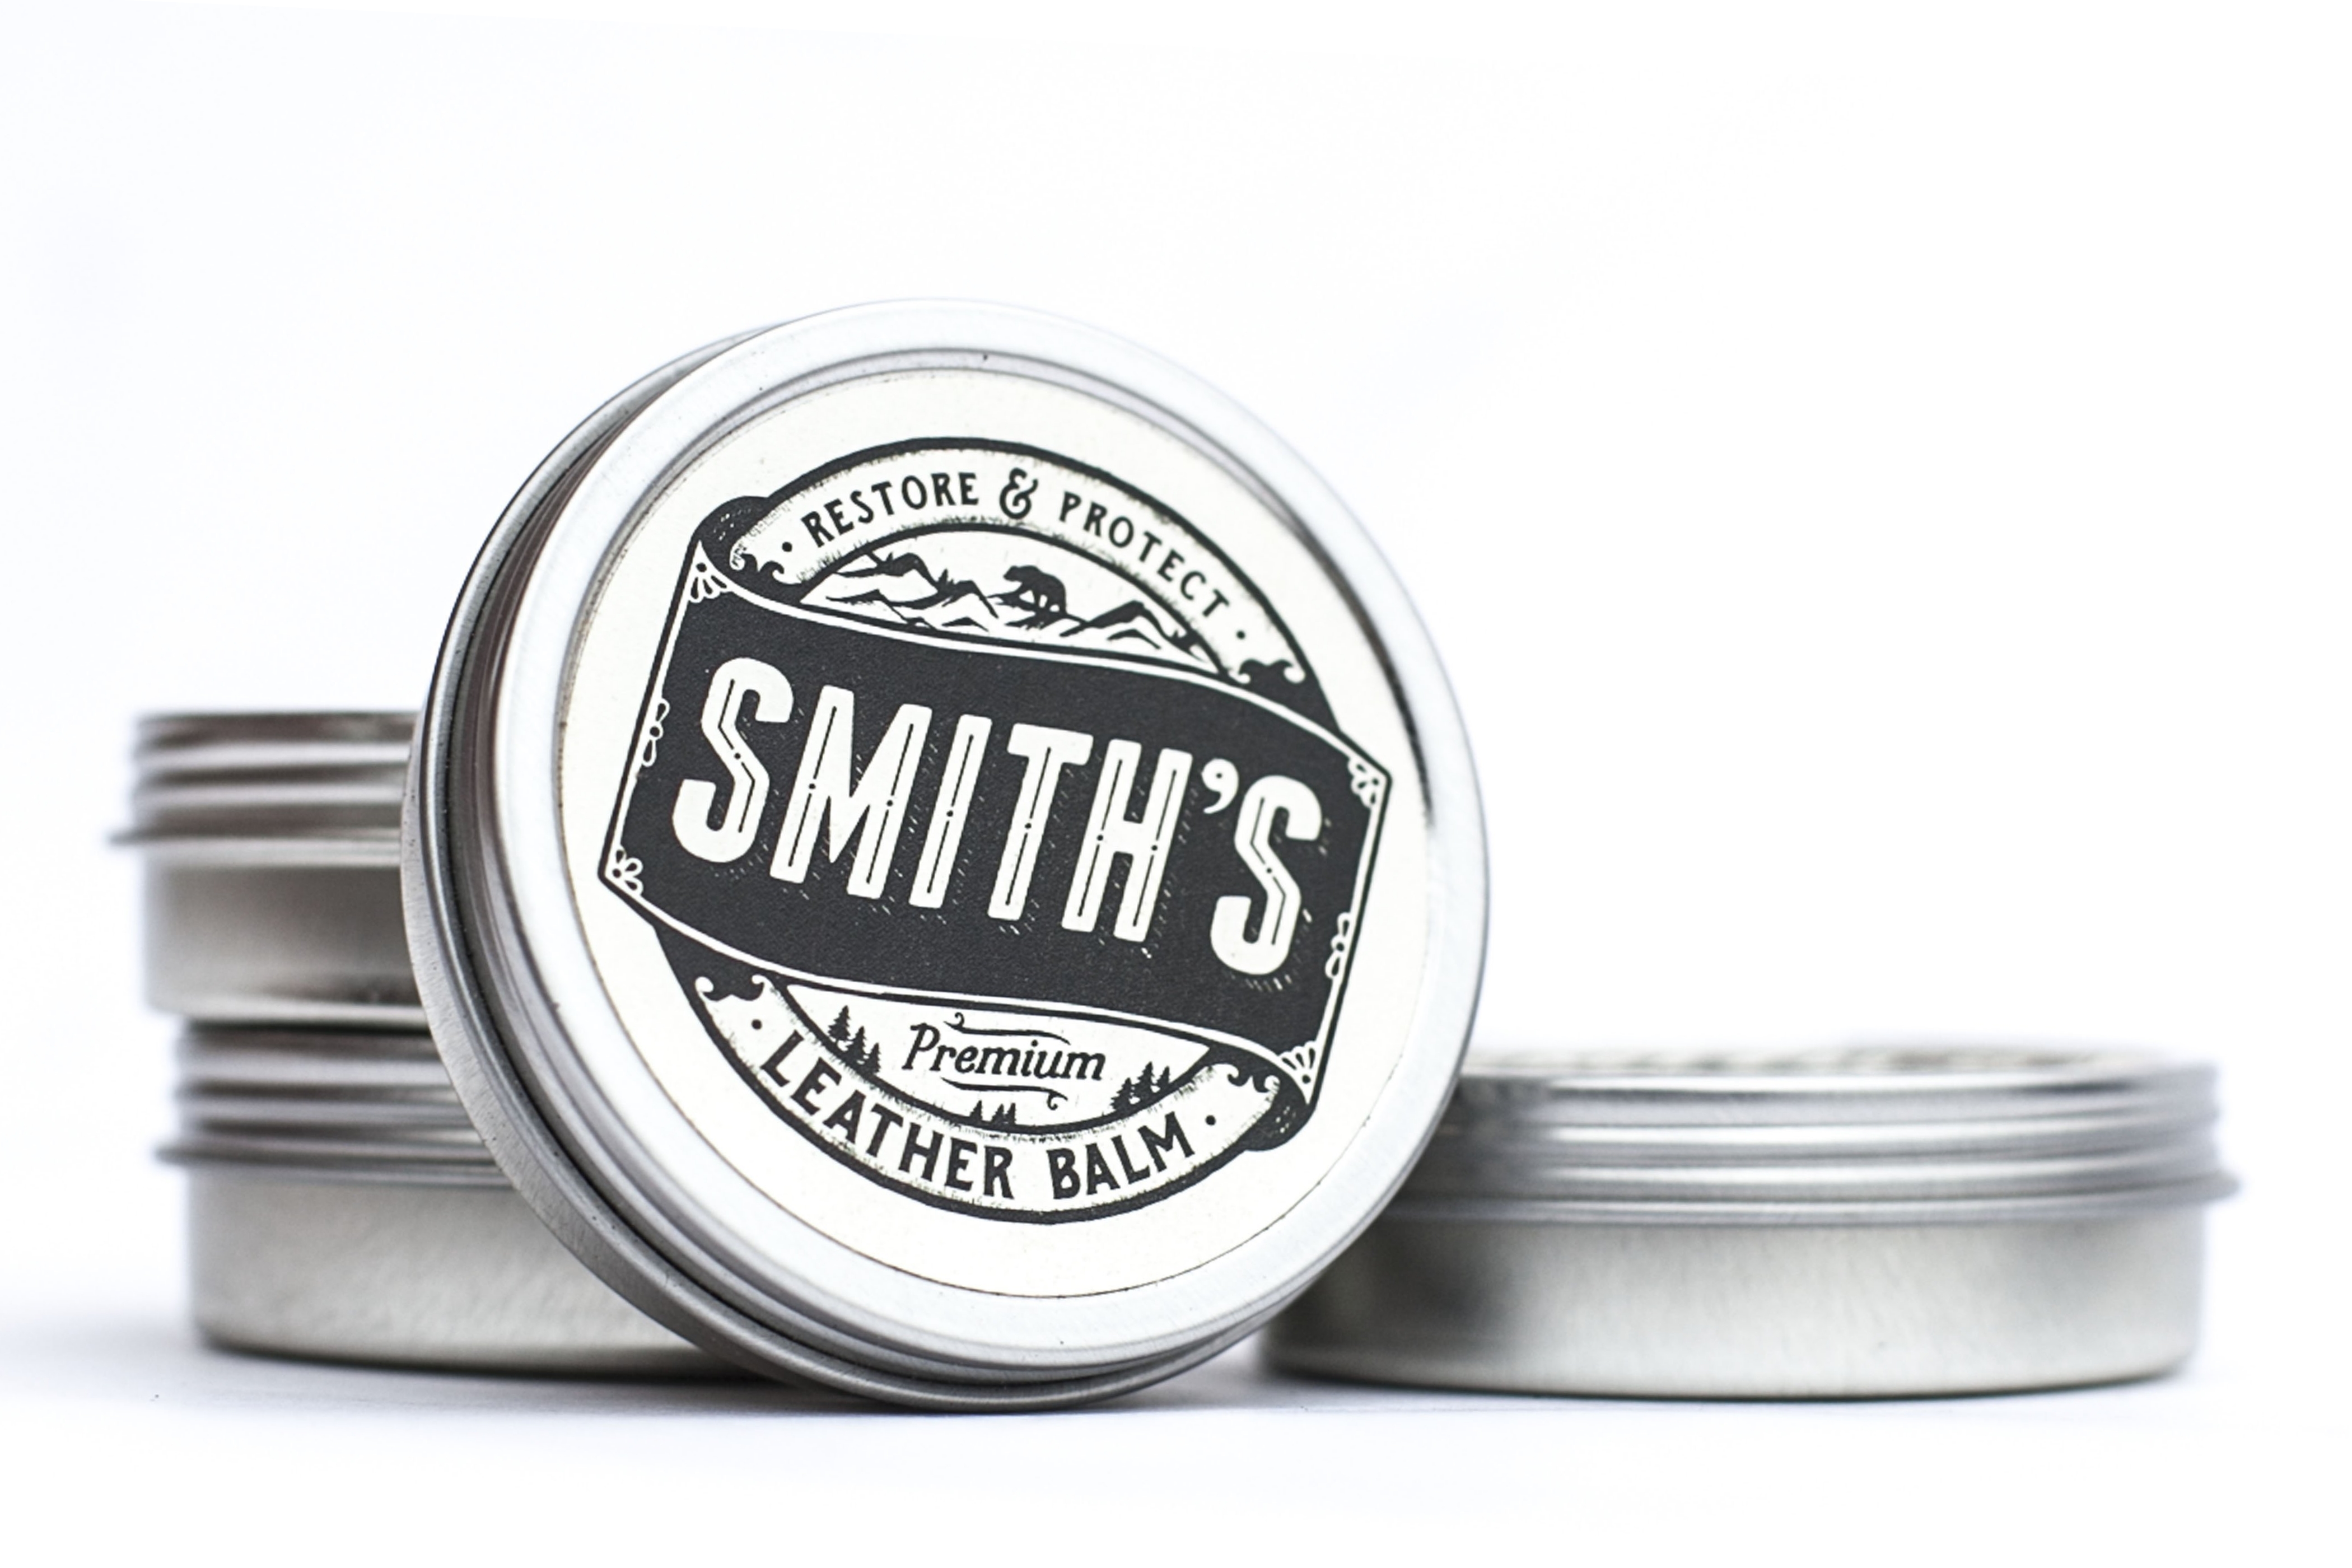 Smith's Leather Balm 1 ounce tin